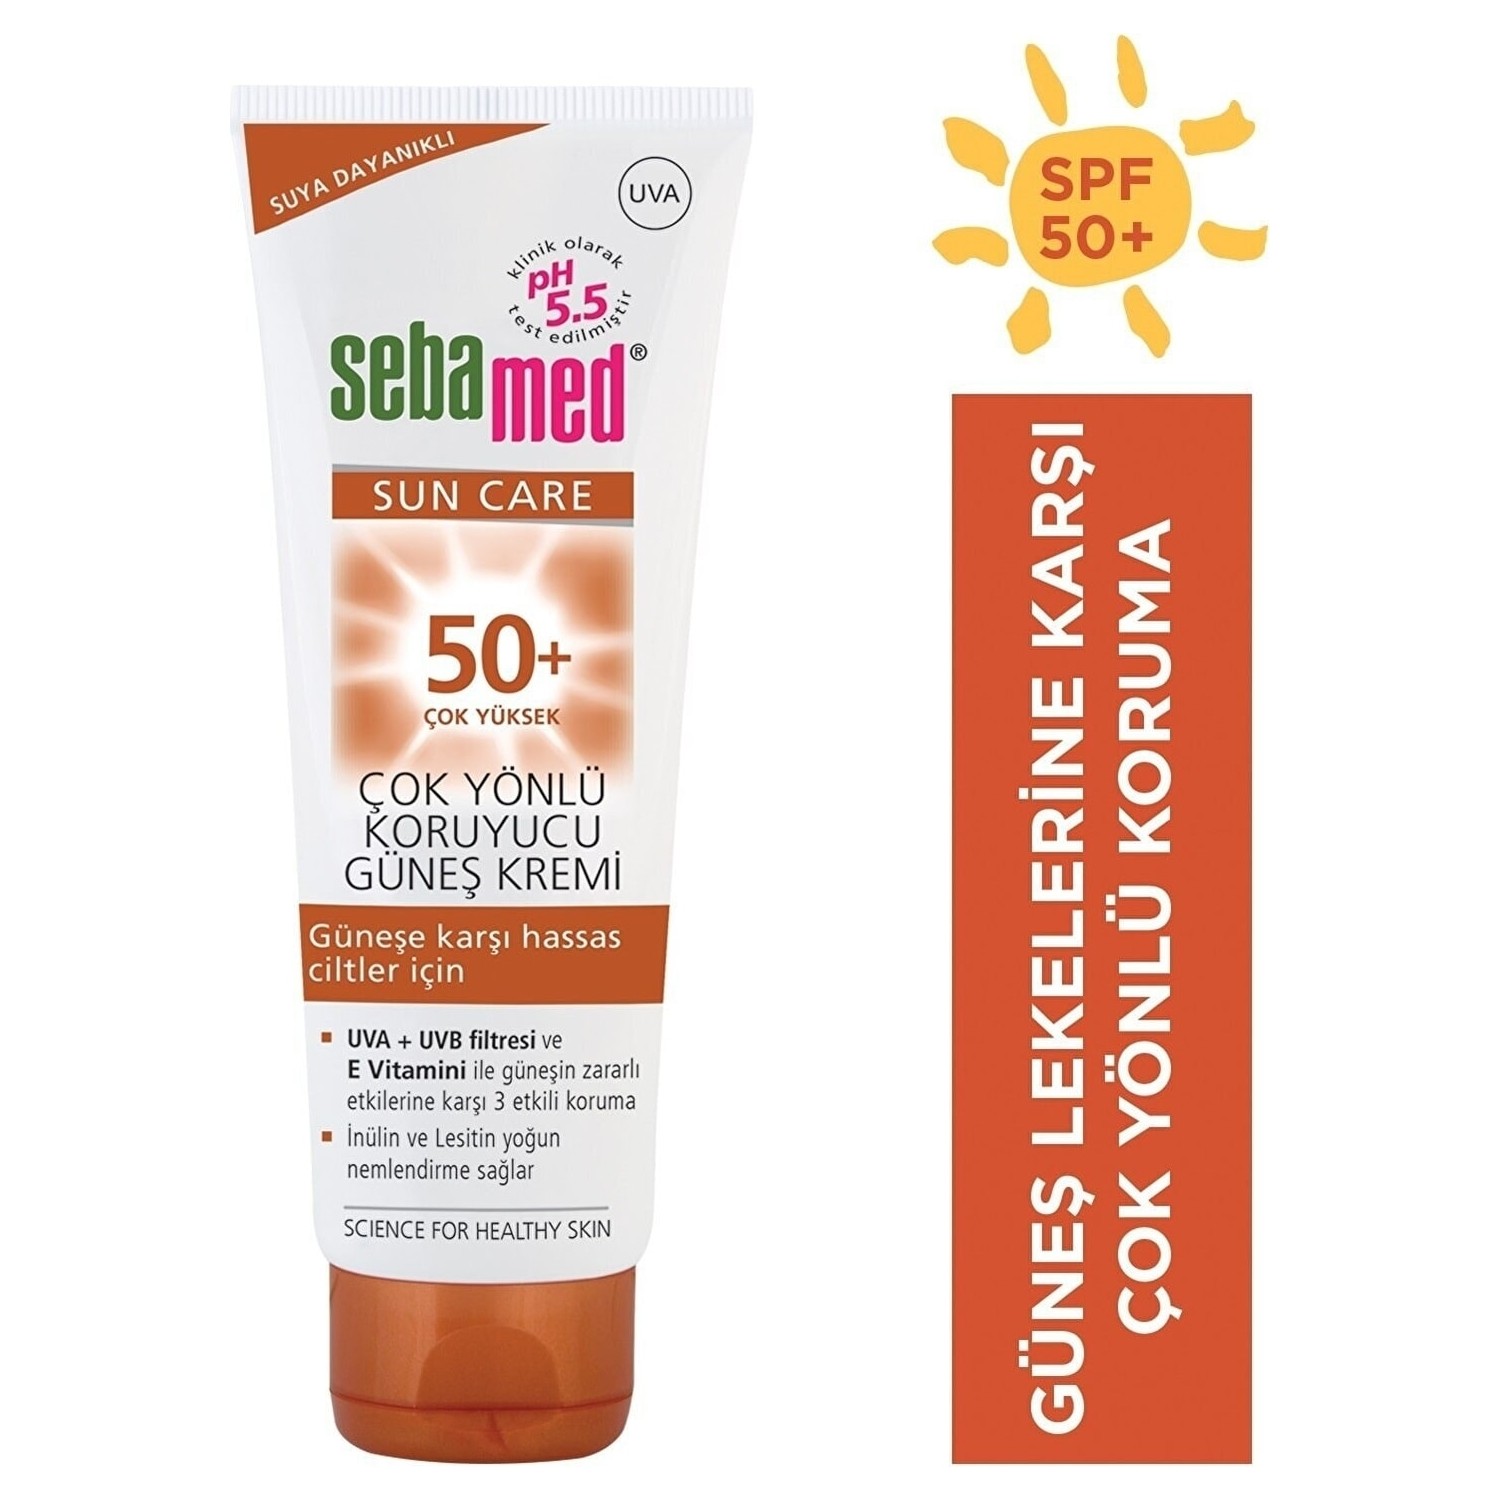 Солнцезащитный крем Sebamed Sun SPF 50, 50 мл солнцезащитный крем 50 мл spf 50